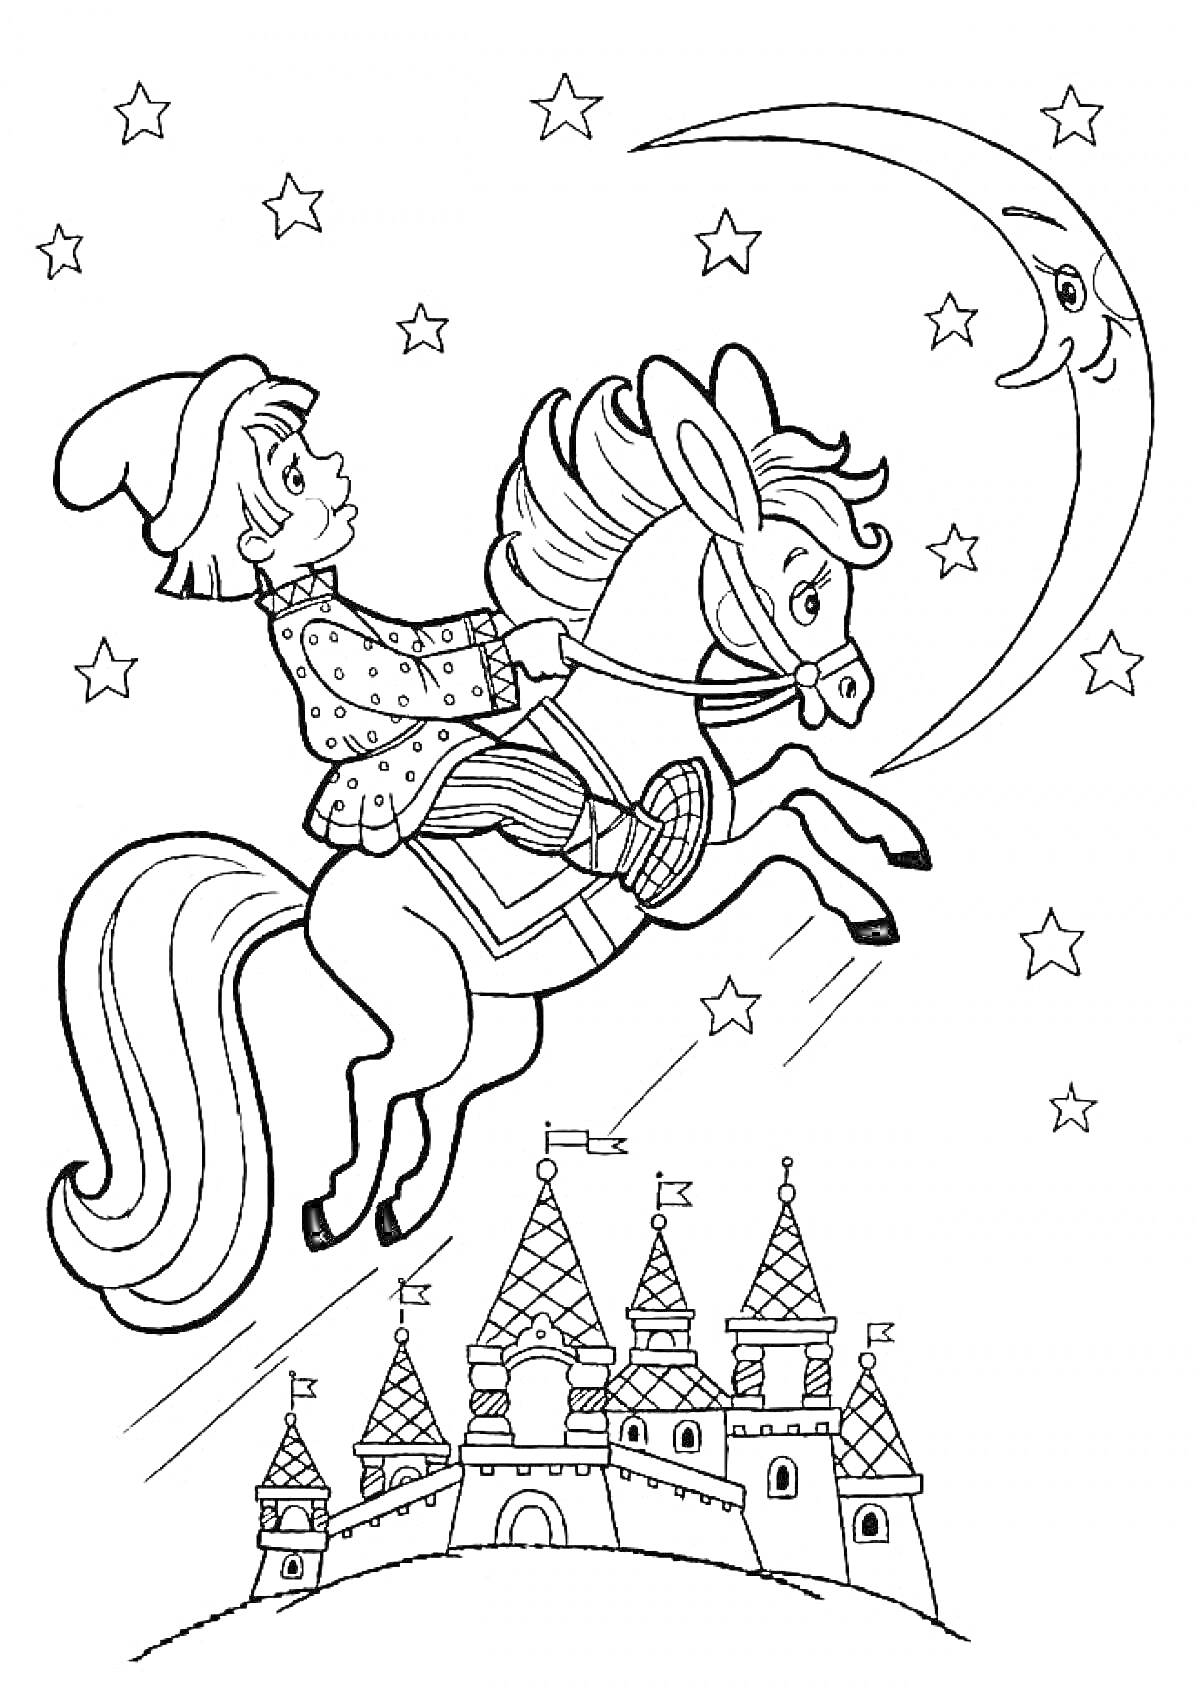 Раскраска Юноша в шапке и полосатой рубашке, сидящий на Коньке-Горбунке, летит через звёздное небо мимо улыбающегося полумесяца, на фоне замка с башнями